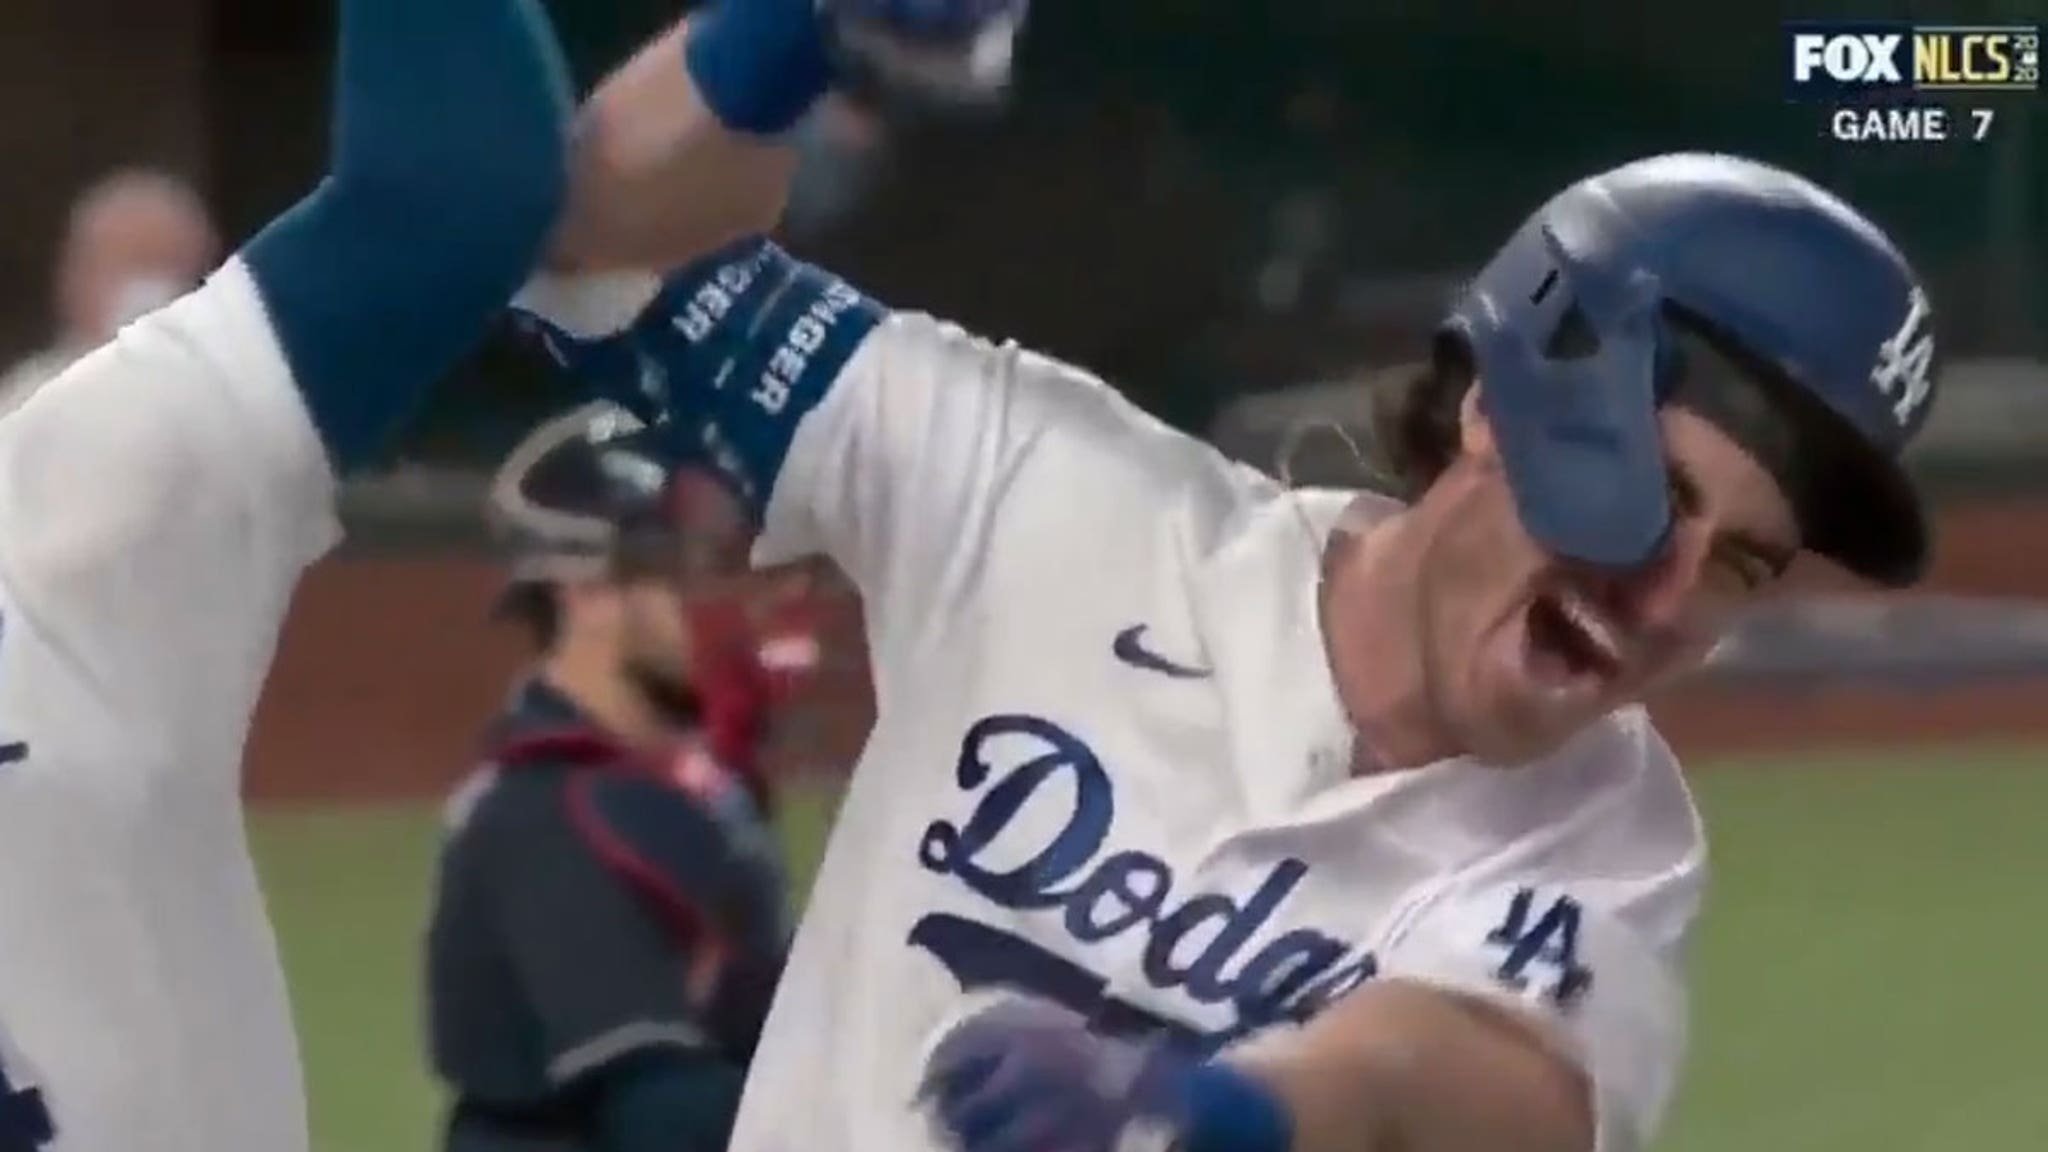 Dodgers' Cody Bellinger Dislocated Shoulder In HR Celebration ... 'I'm Good'